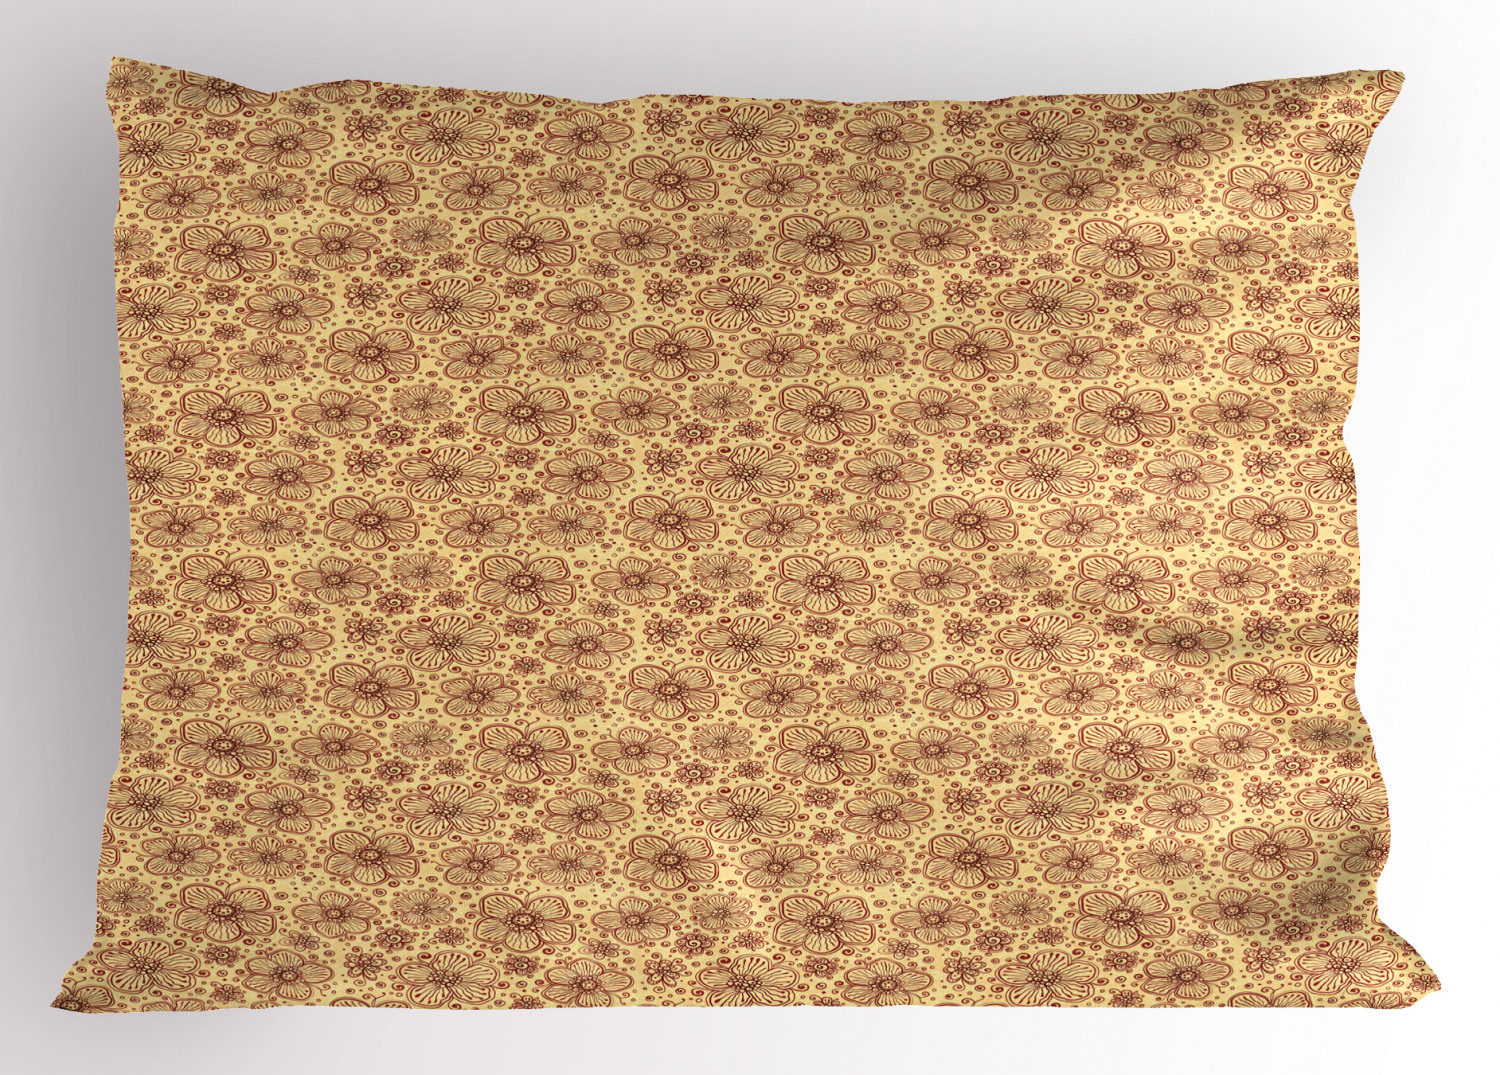 Details about   Vintage Garden Pillow Sham Decorative Pillowcase 3 Sizes Bedroom Decoration